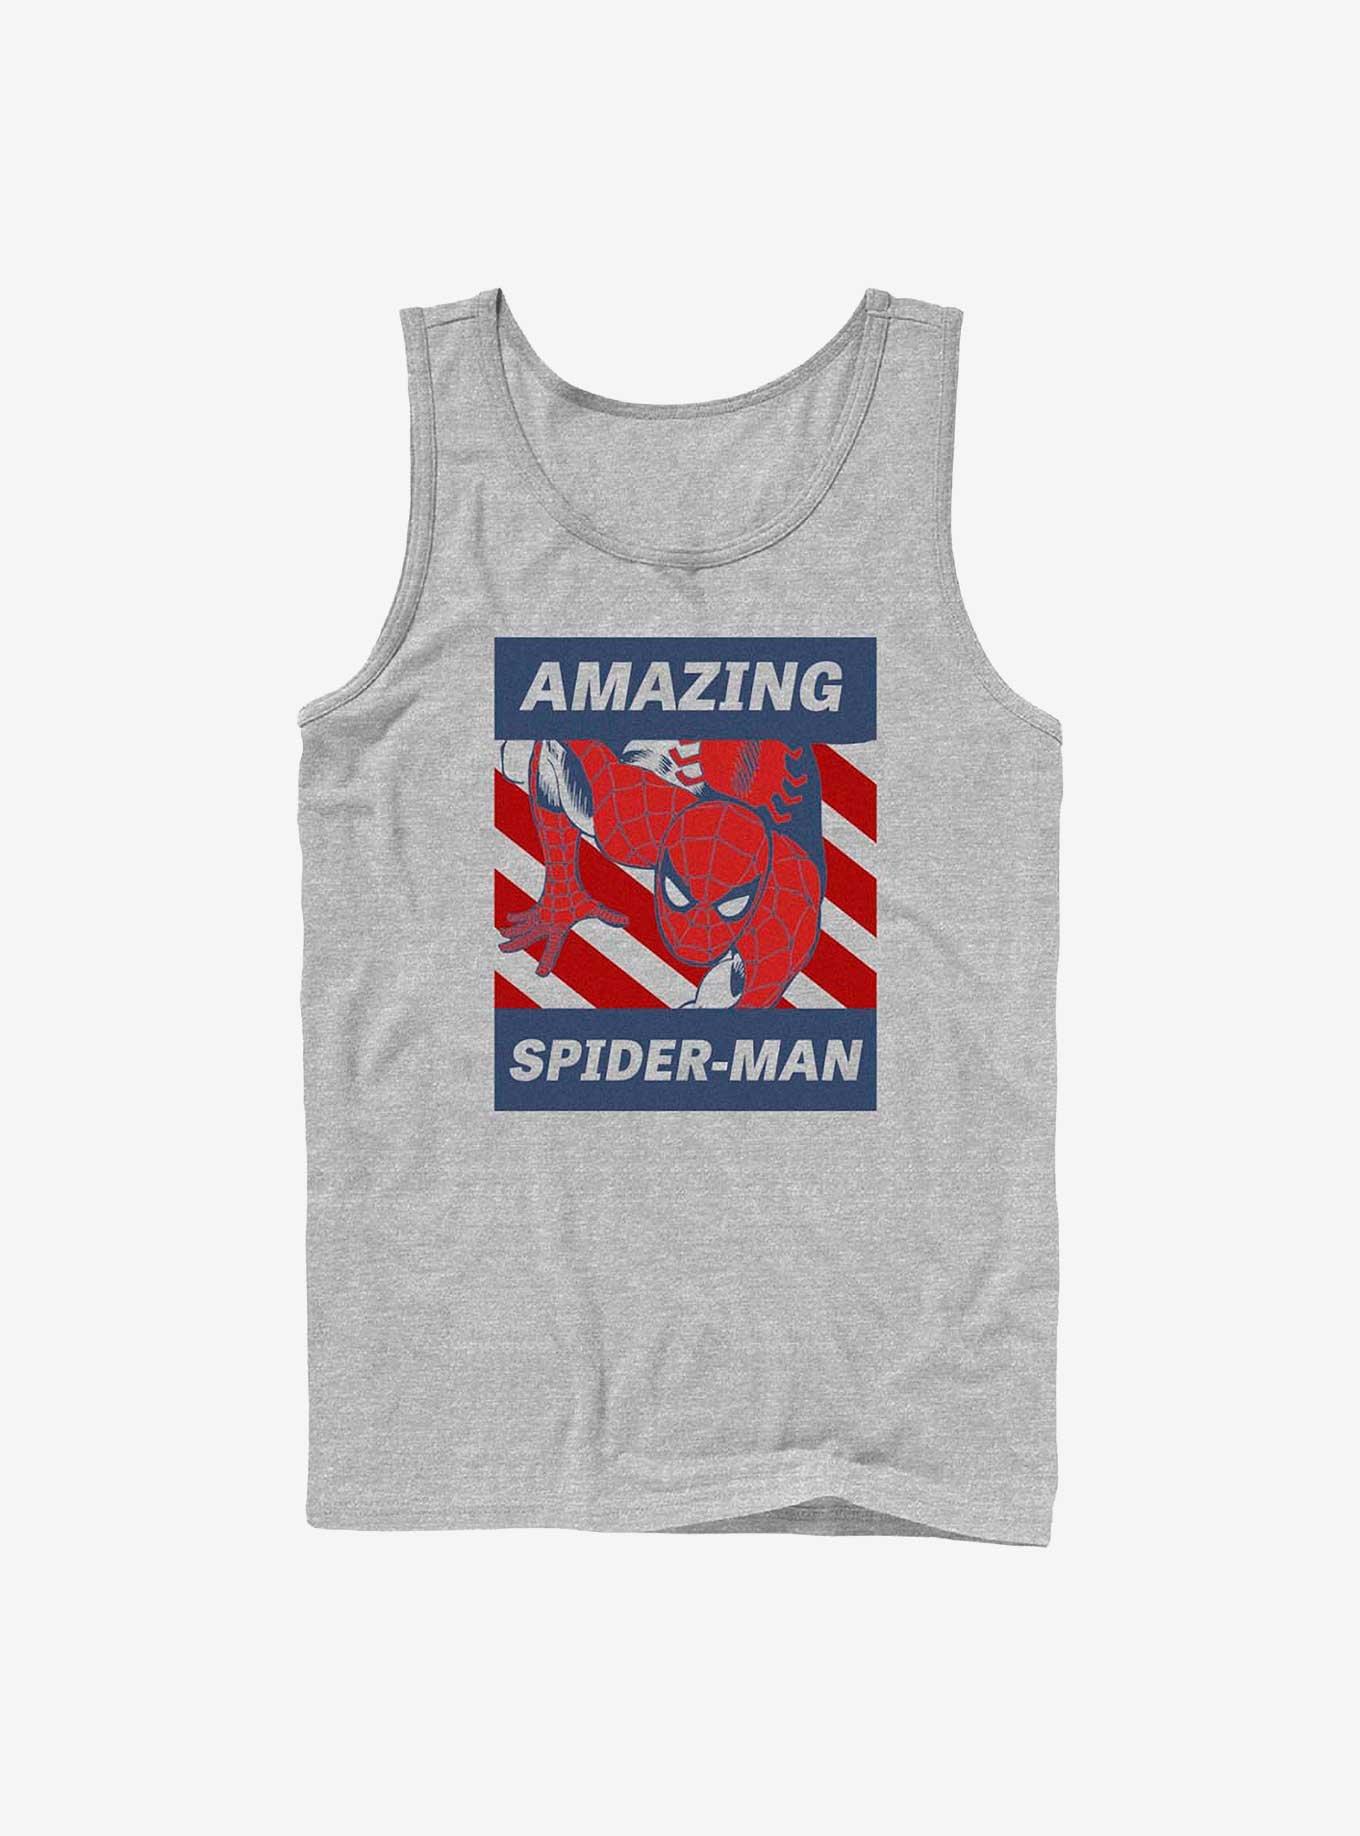 Marvel Spider-Man Amazing Guy Tank